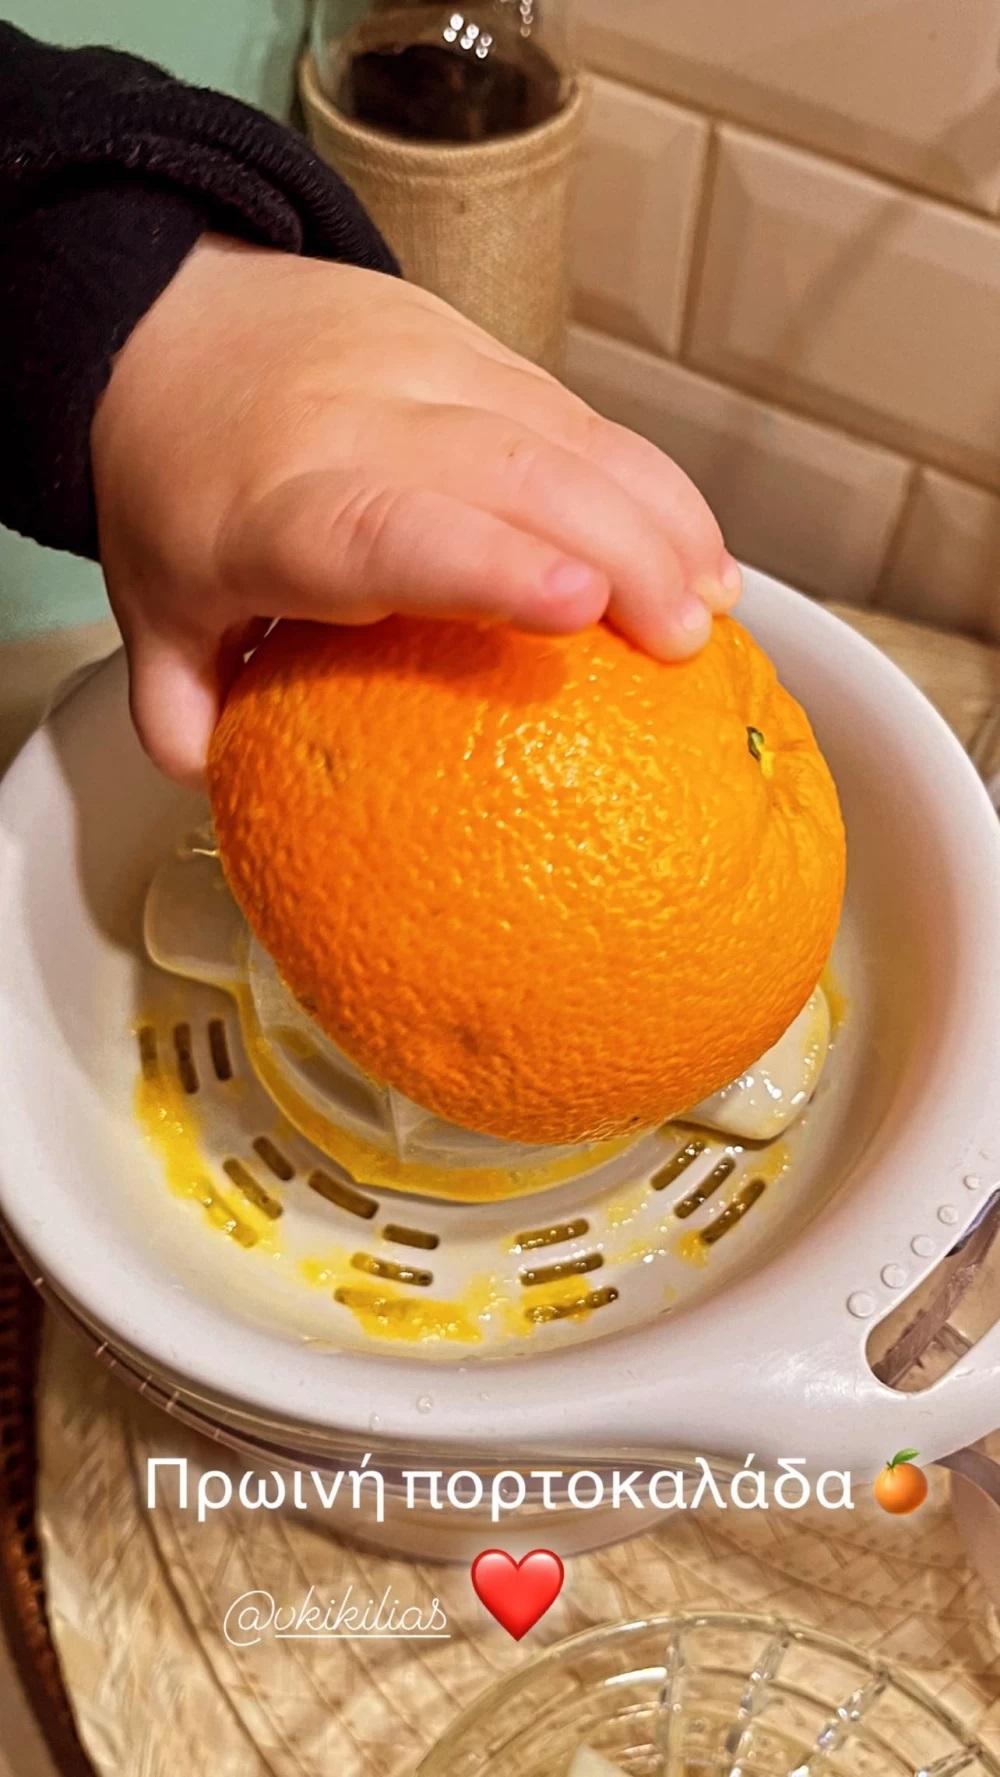 Τζένη Μπαλατσινού: Ο μικρός Παναγιώτης-Αντώνης φτιάχνει πορτοκαλάδα! (εικόνα)